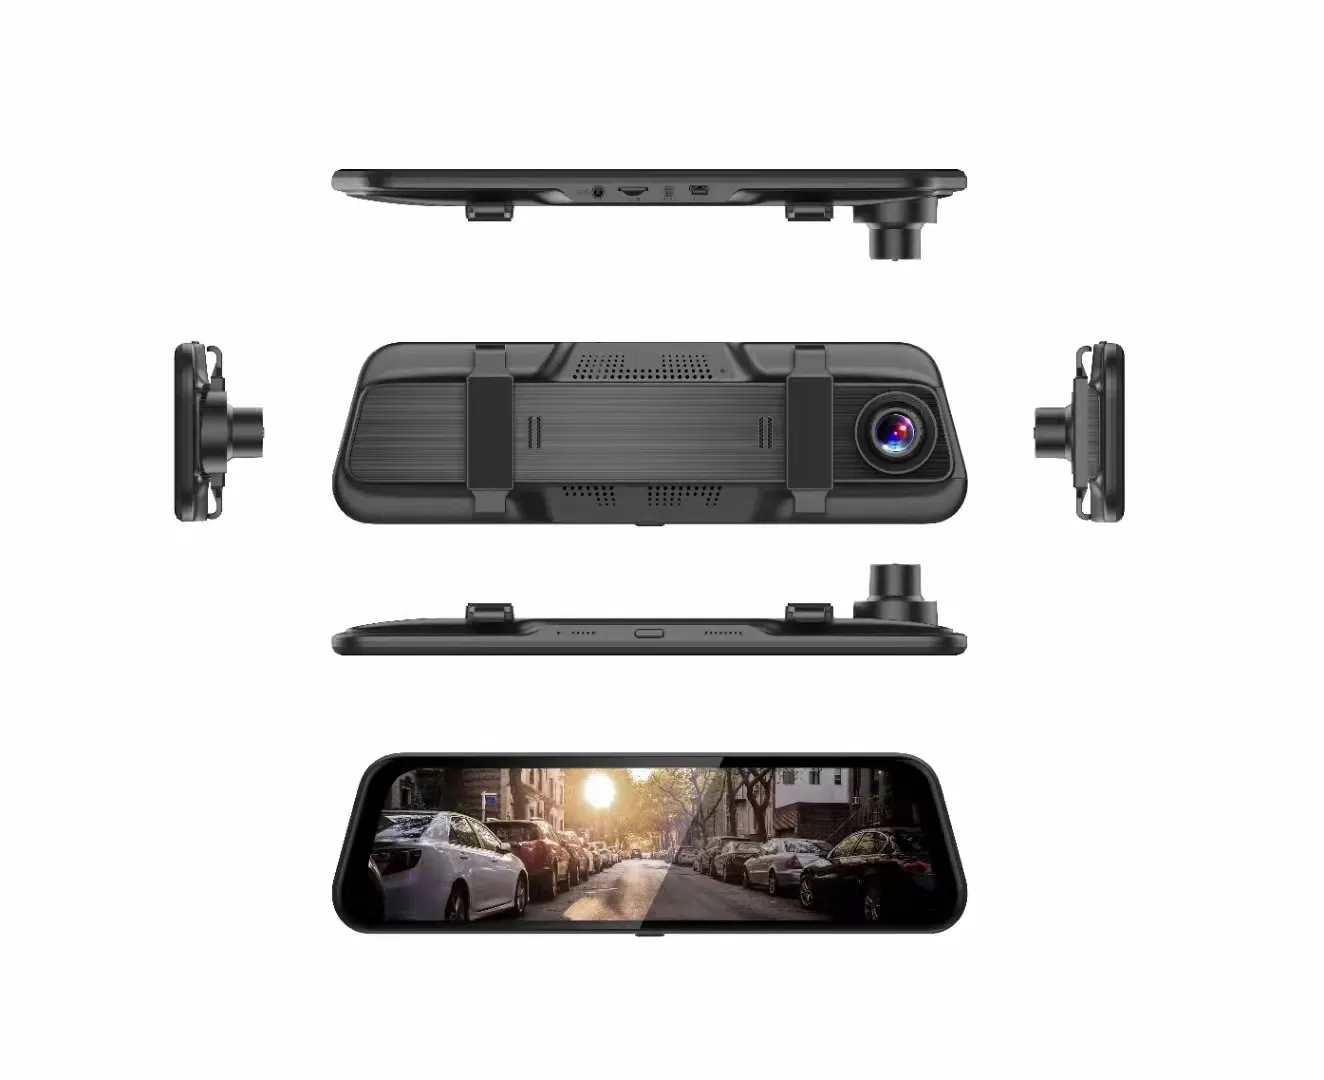 Kamera dasbor mobil mata-mata, kendaraan dvr video g-sensor depan dan belakang 4k perekaman Loop kamera dasbor perekam mengemudi